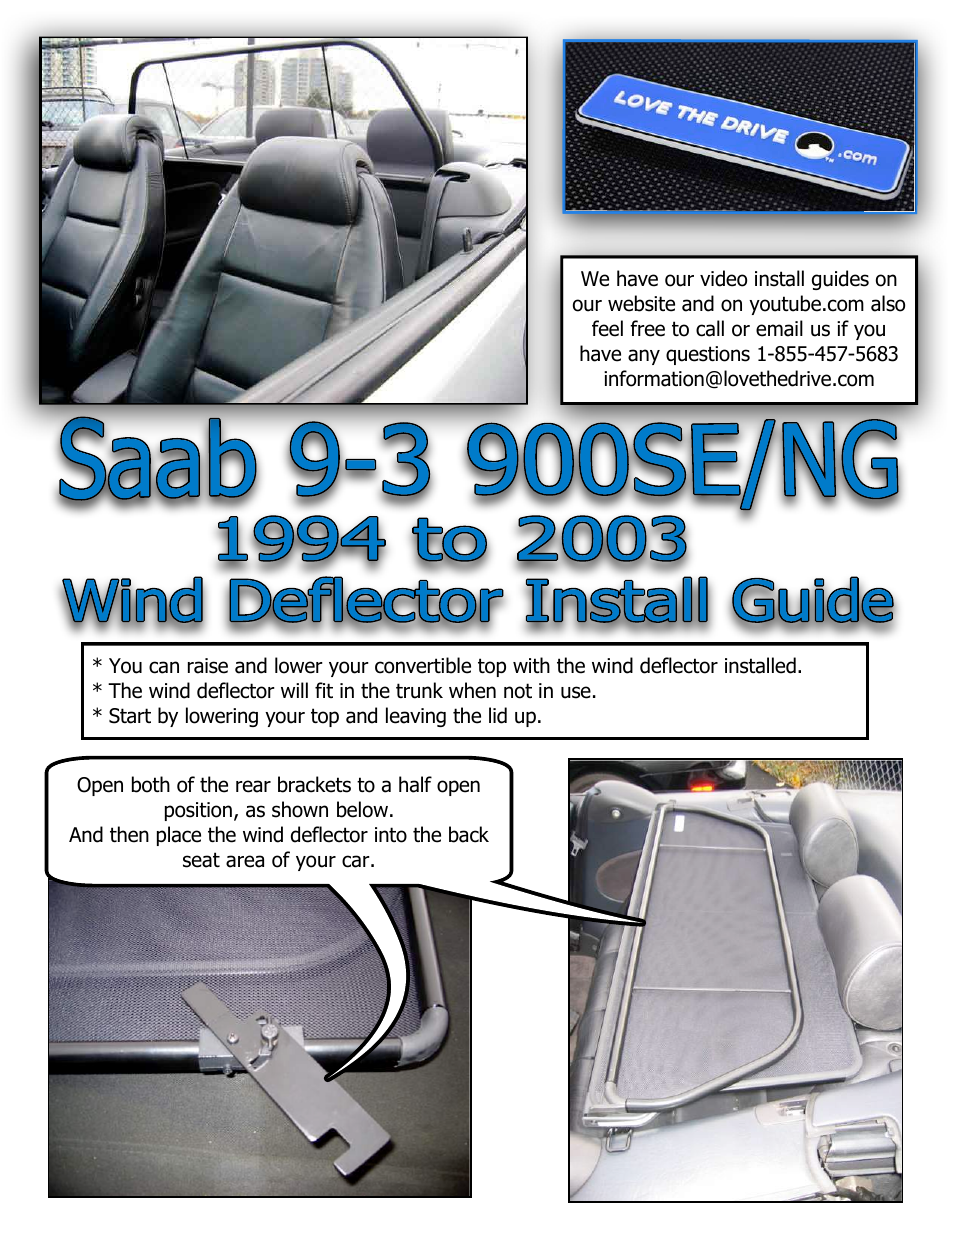 Saab 900SE, 900NG, 9-3 Wind Deflector 1994 to 2003